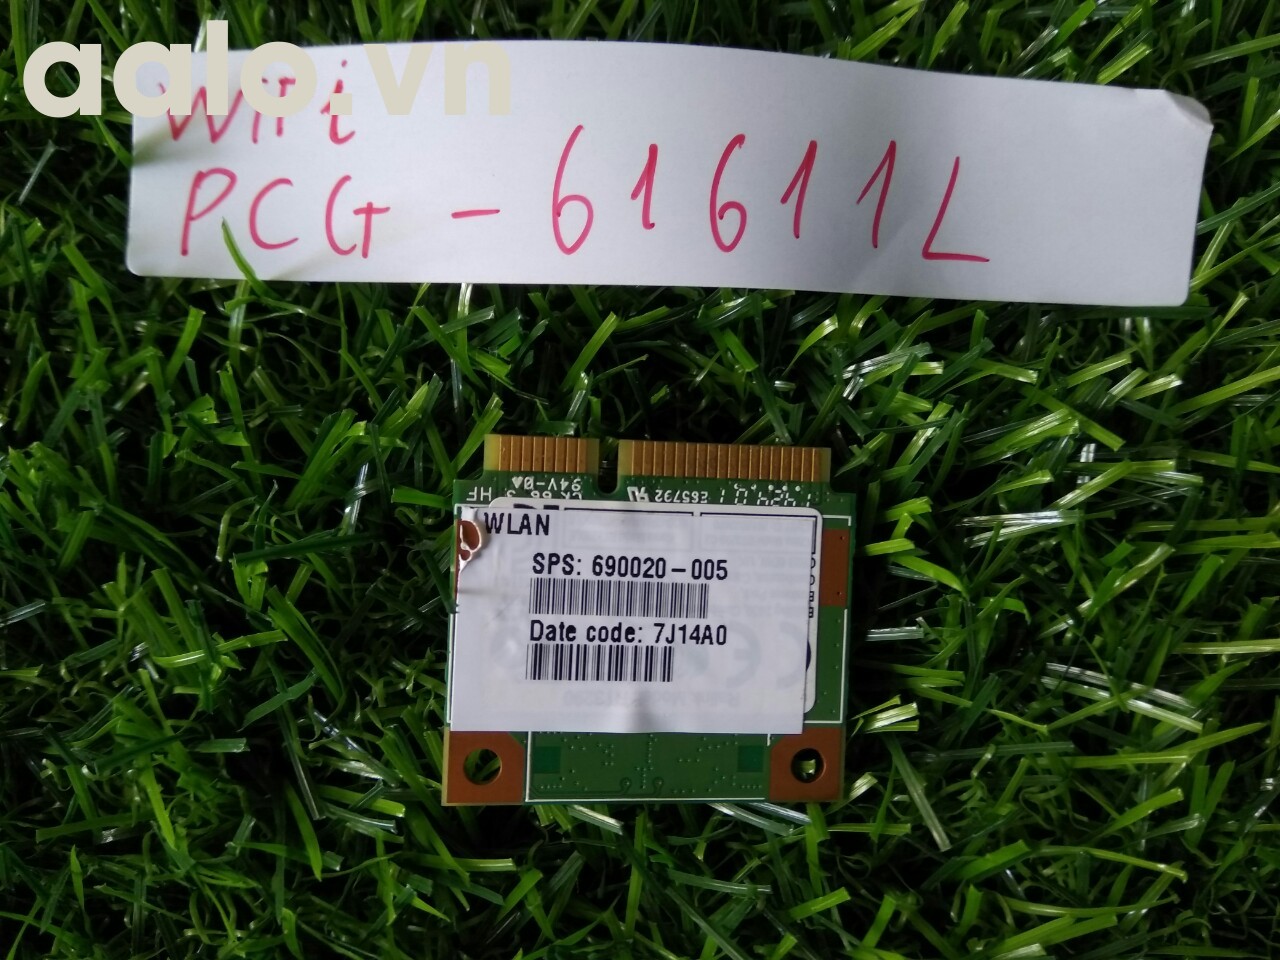 Sony VPCEE45FX PCG-61611L 15.6" OEM WiFi Wireless Card